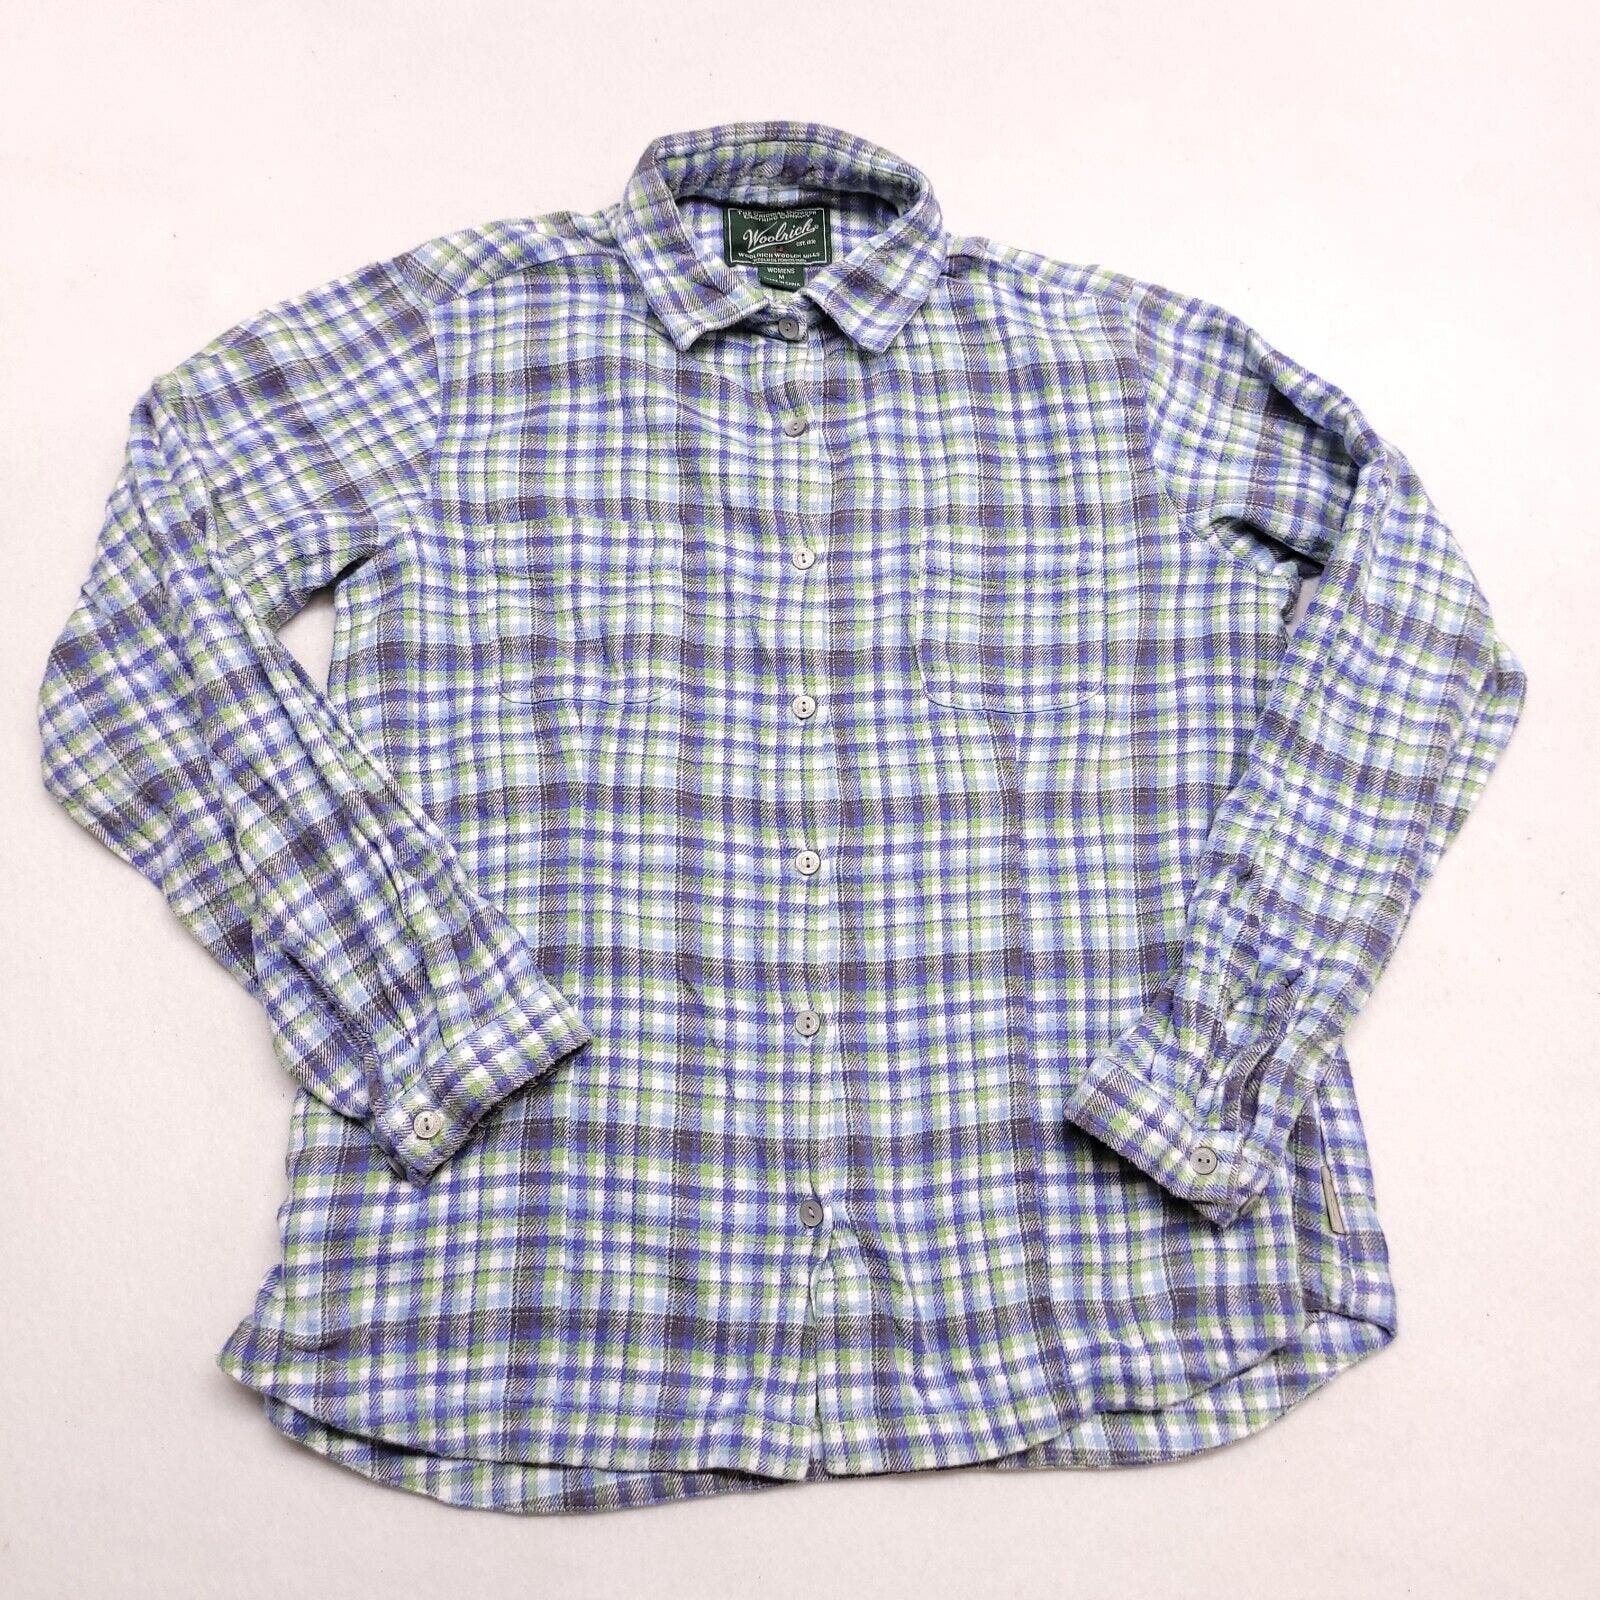 Factory Direct  Woolrich Casual Button Up Long Sleeve Shirt Womens Size Medium M Blue Green oC0ojbSOb US Outlet